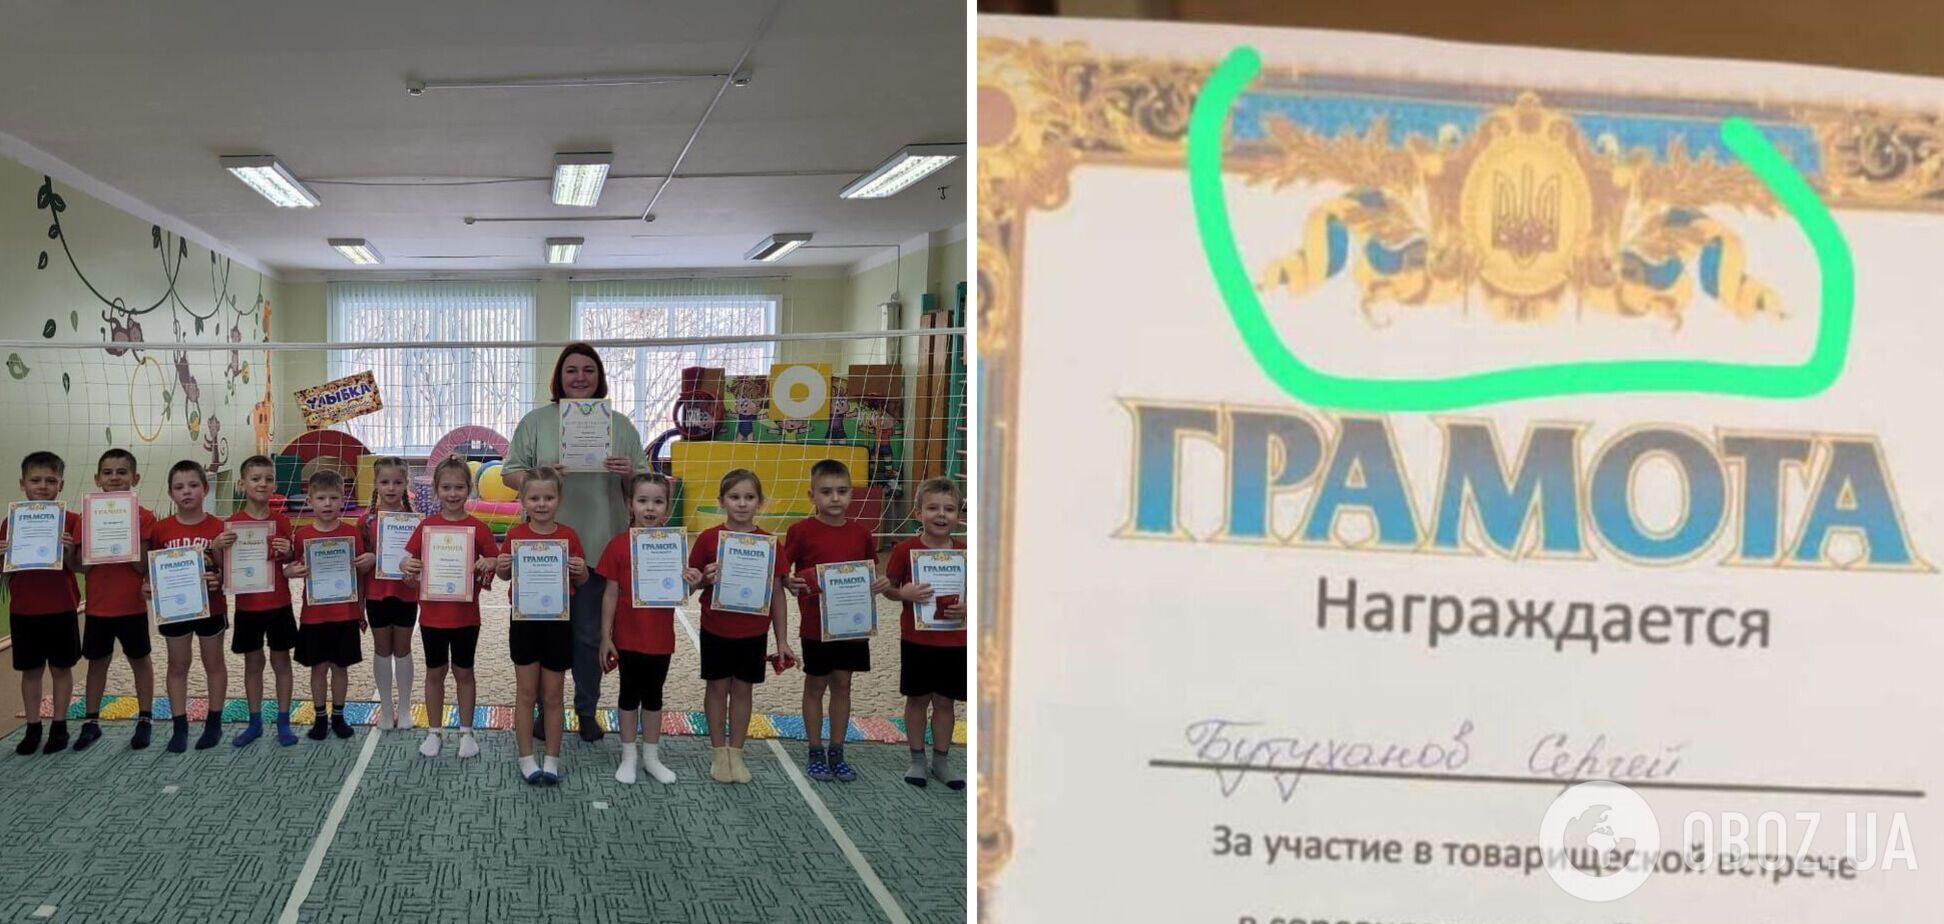 В Хабаровске на соревнованиях детям дали грамоты с украинским гербом. Фото и видео